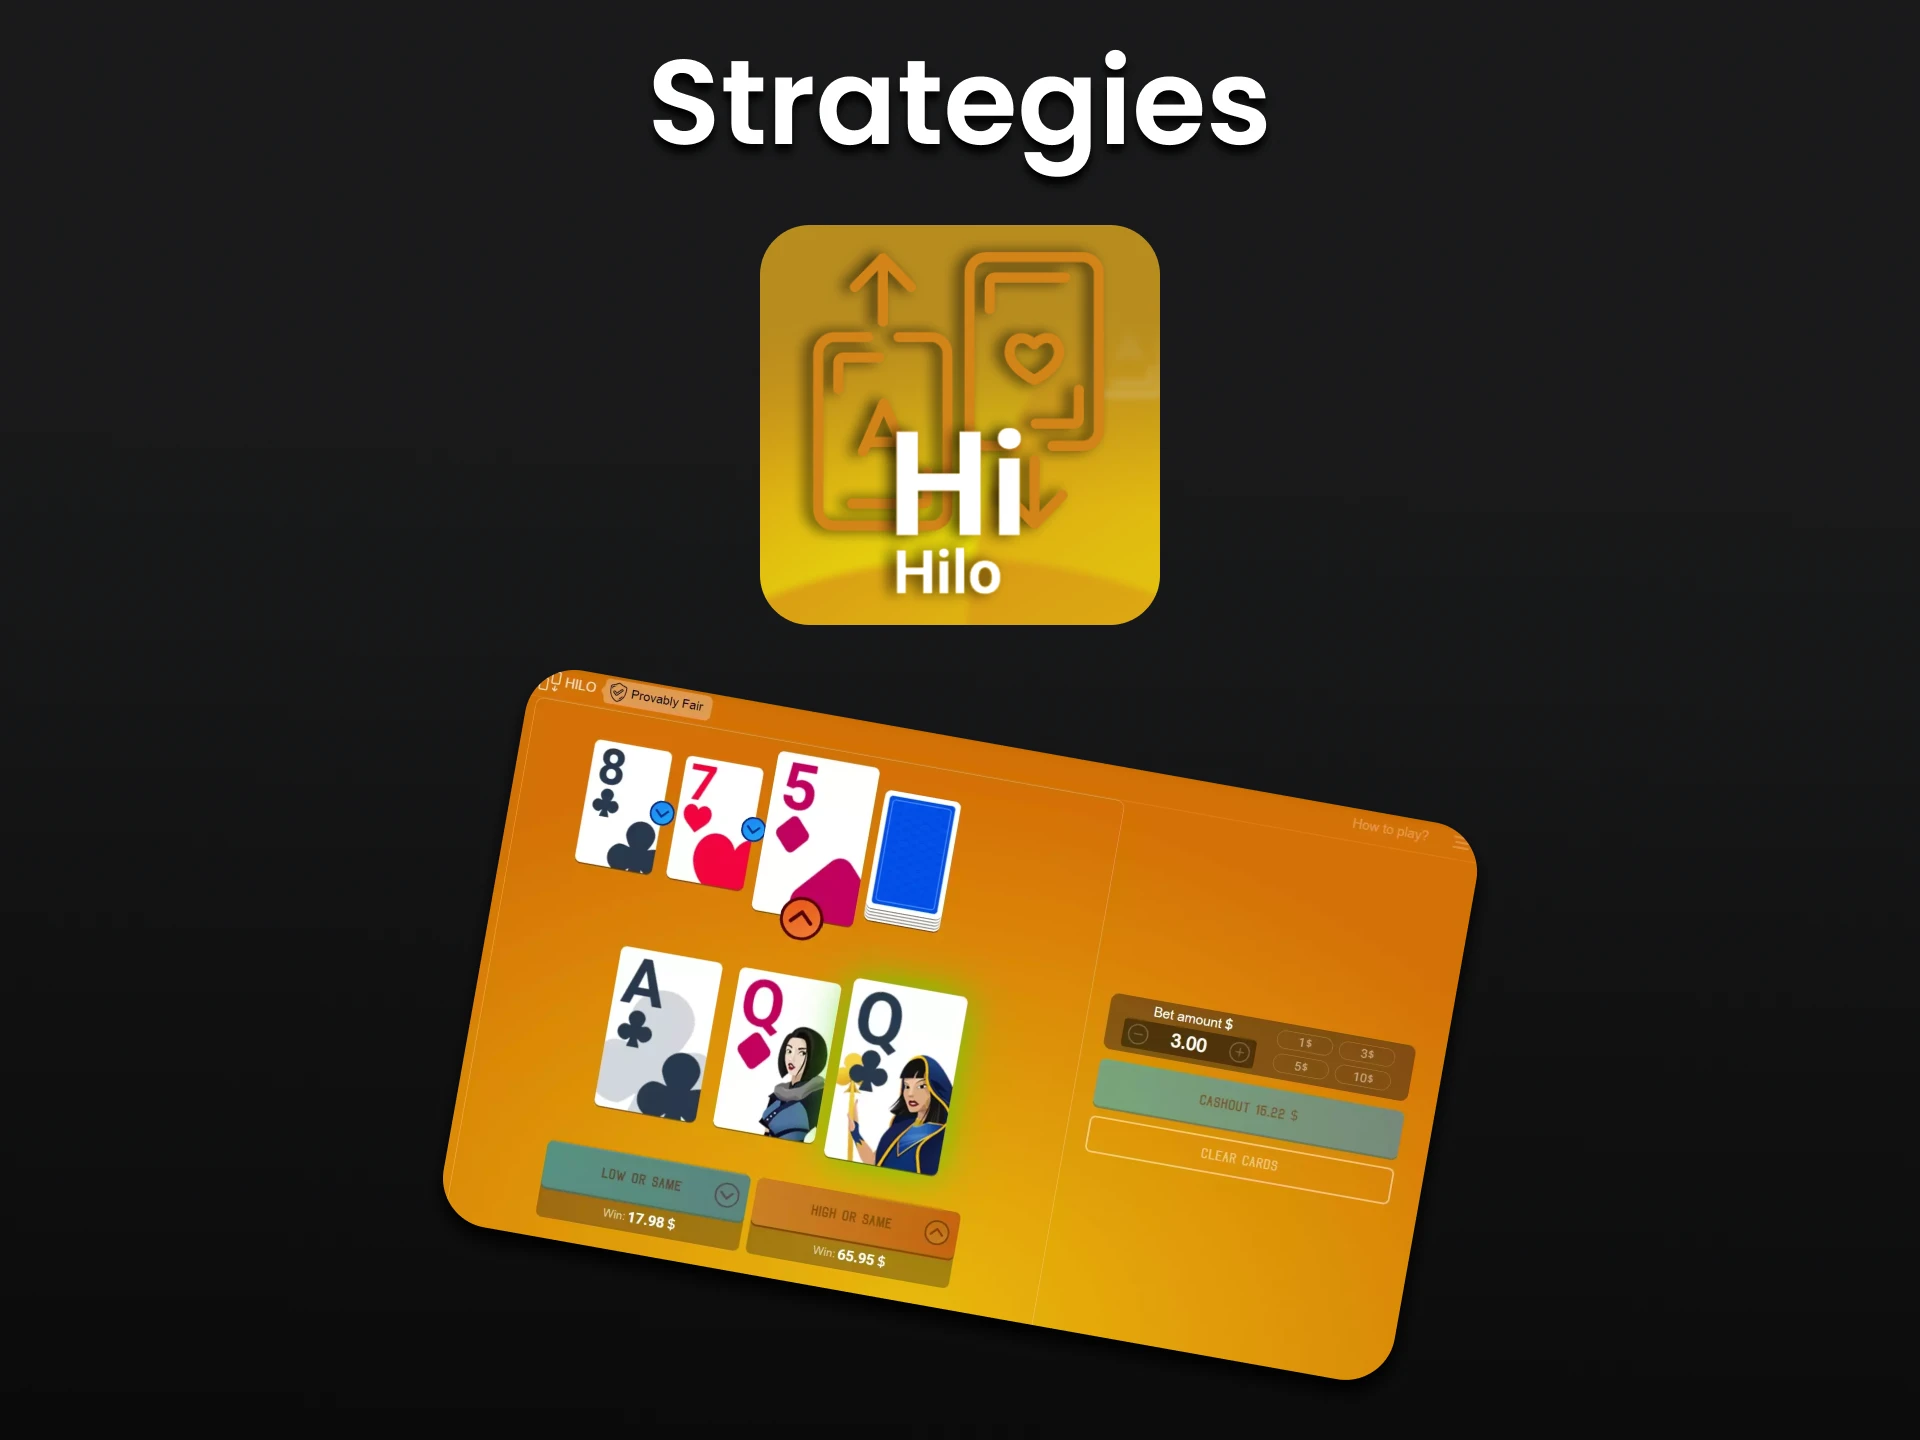 Learn strategies for winning in Hilo.